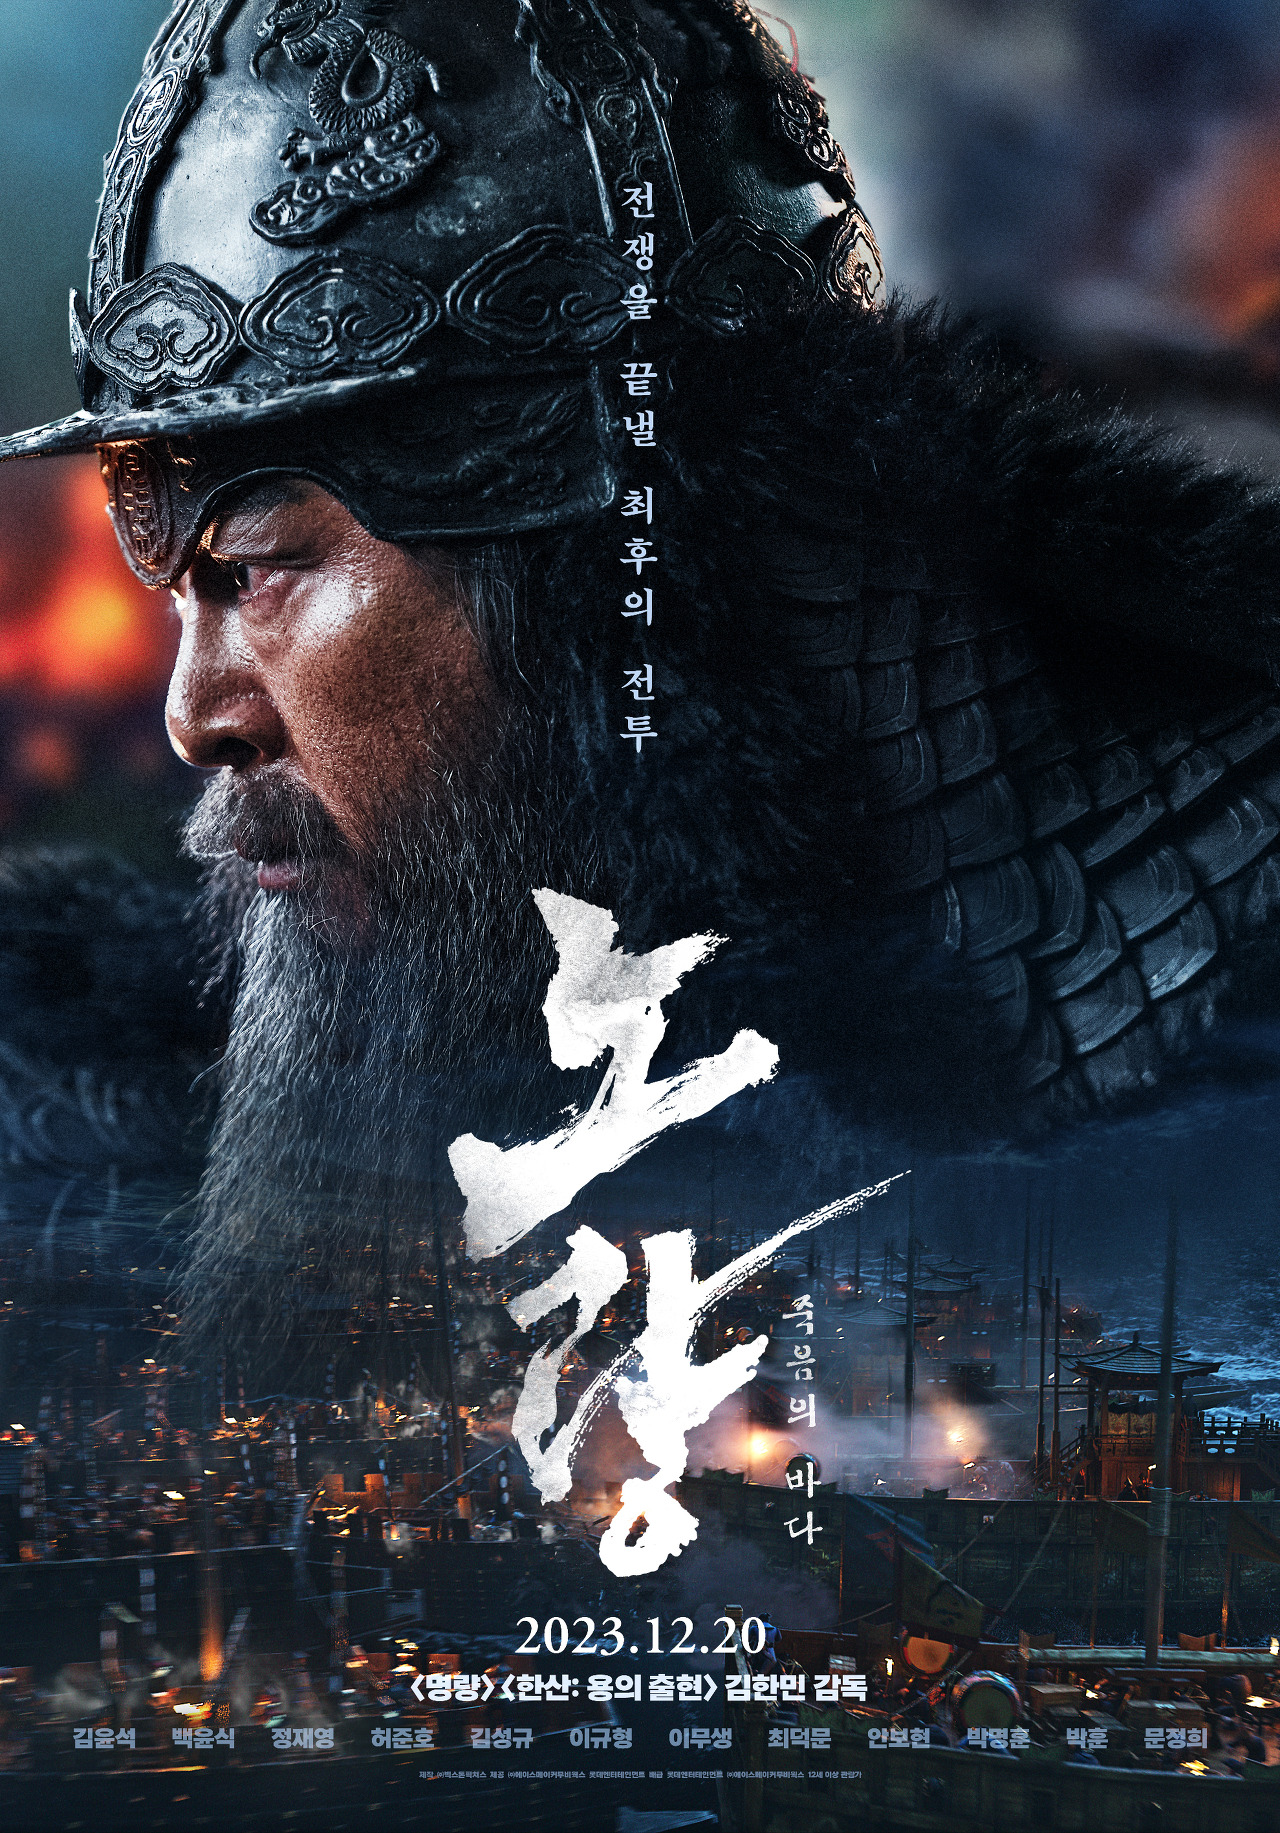 이순신 역할을 맡은 김윤석의 얼굴이 나온 영화 &quot;노량: 죽음의 바다&quot; 포스터 모습이다.